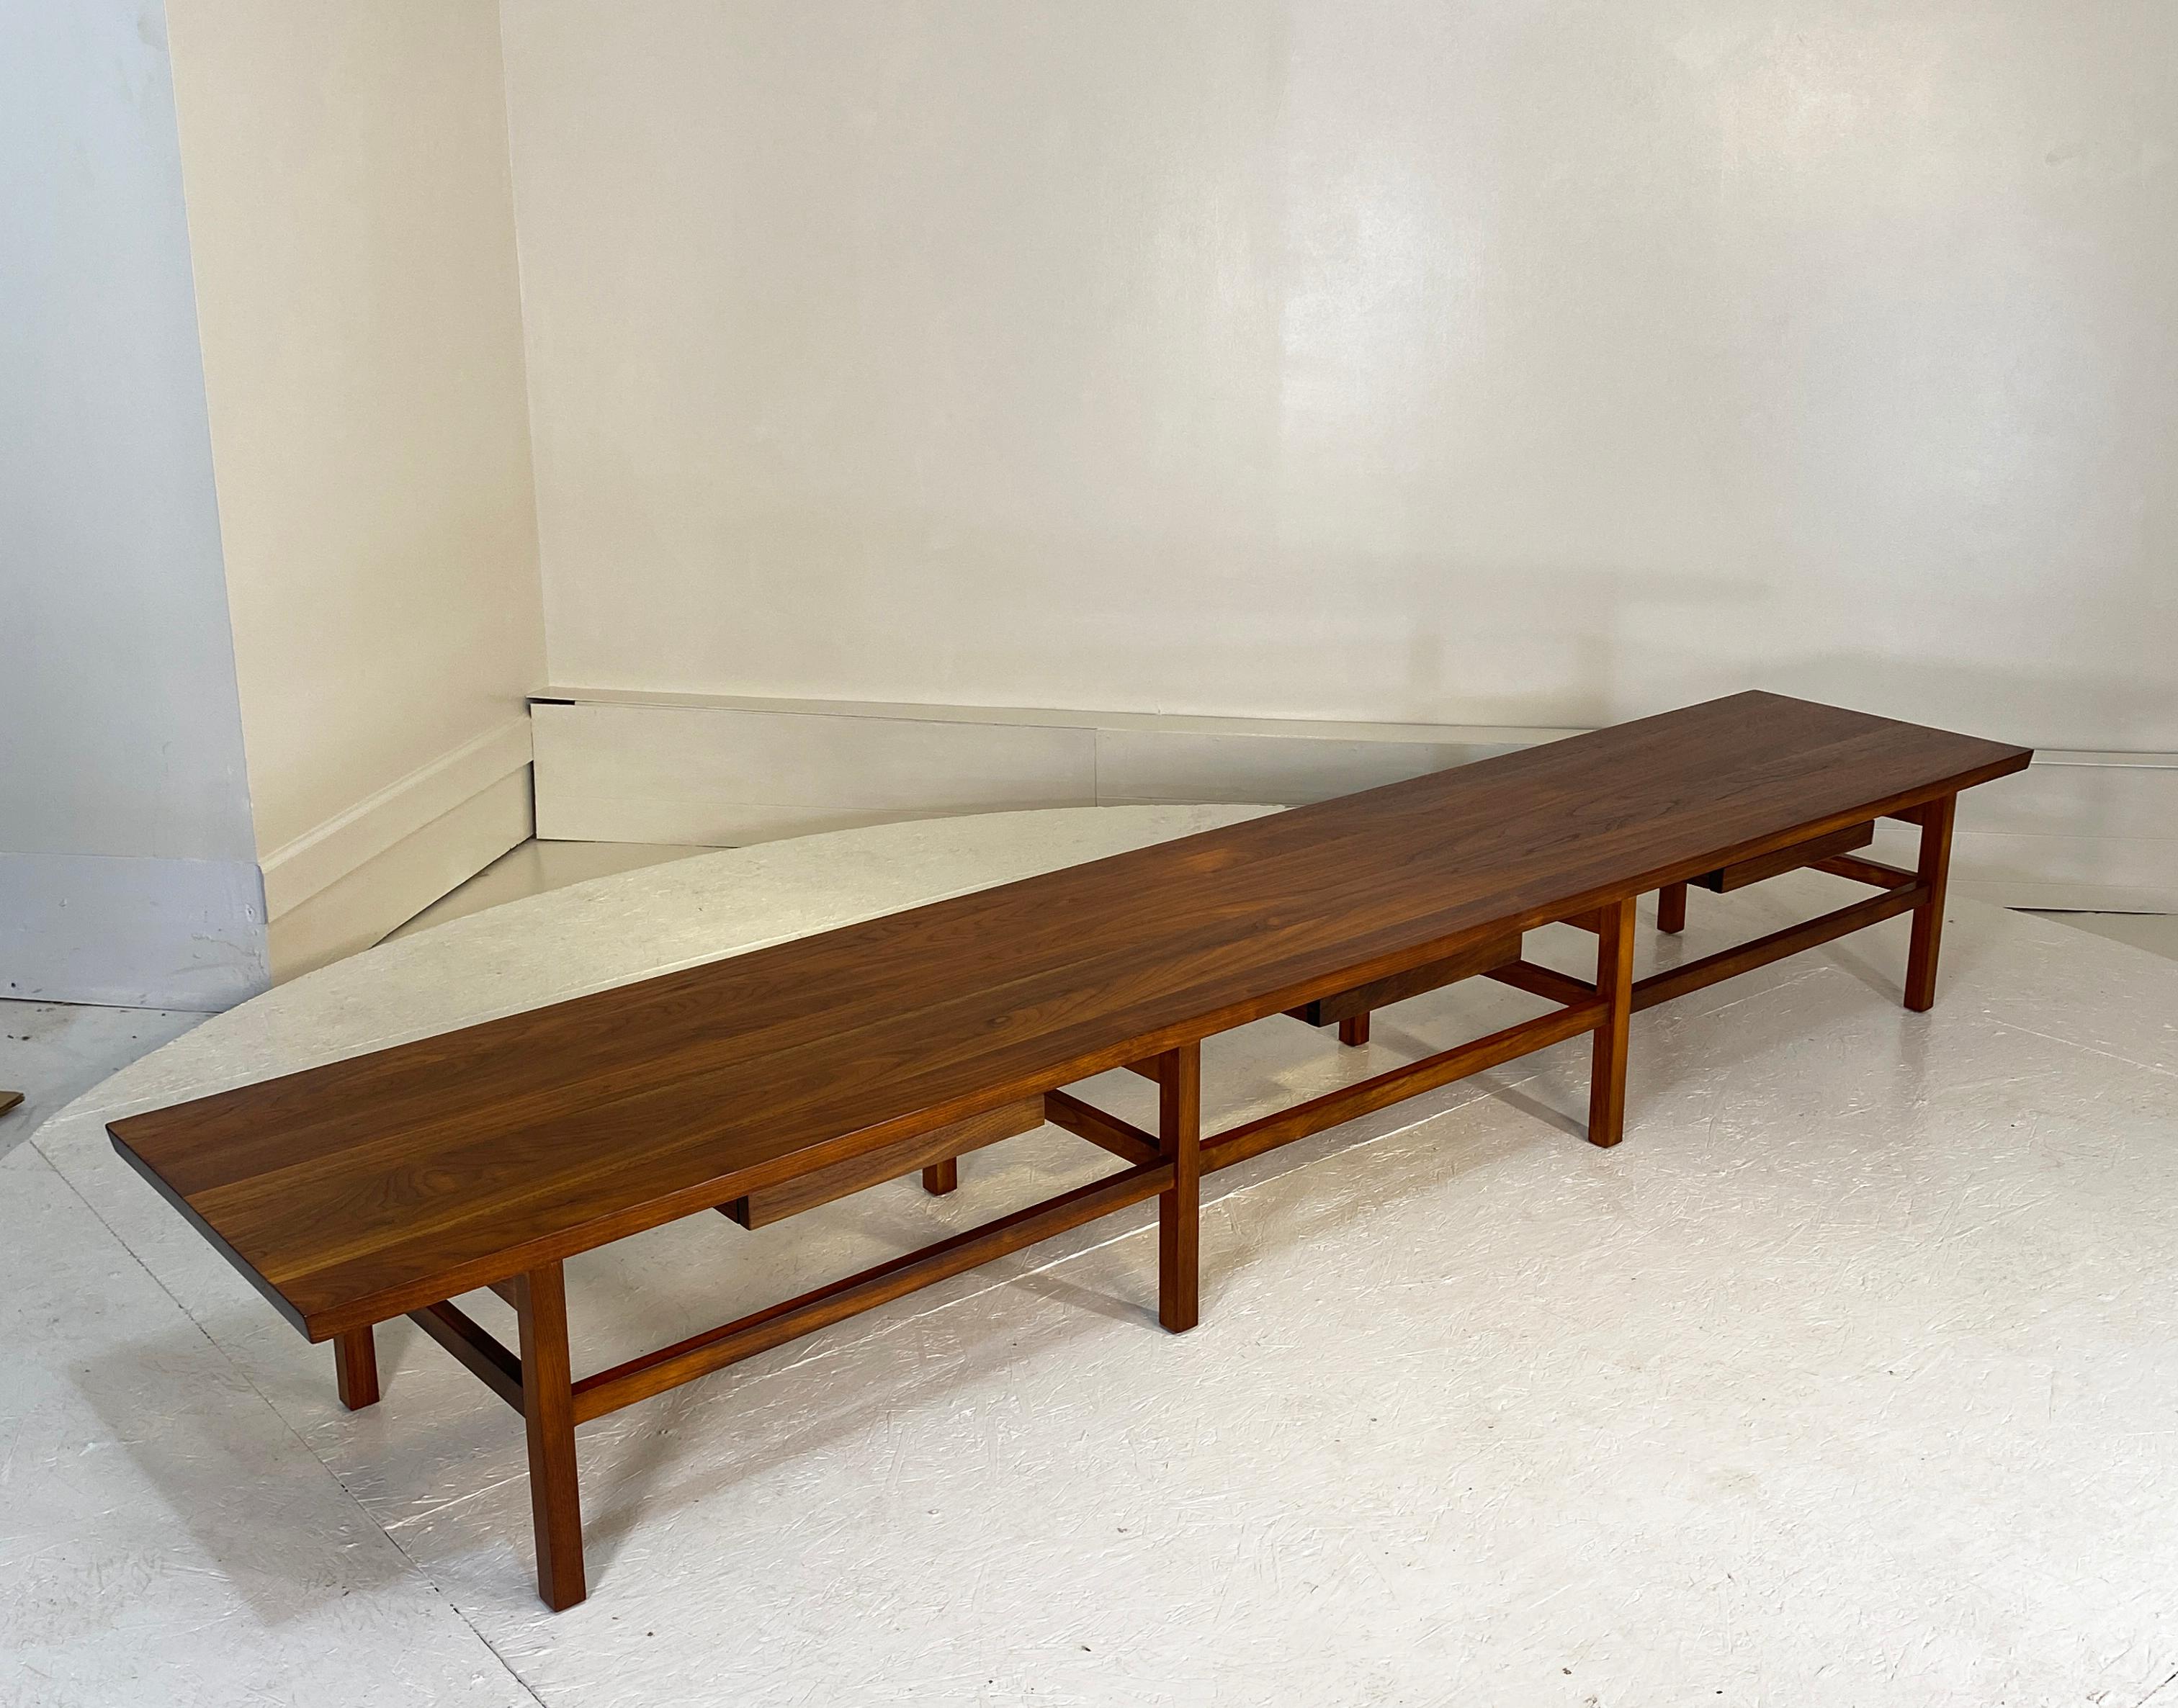 Une table basse remarquablement grande, une table ou un banc de 9 pieds de long. Profondeur 19,75